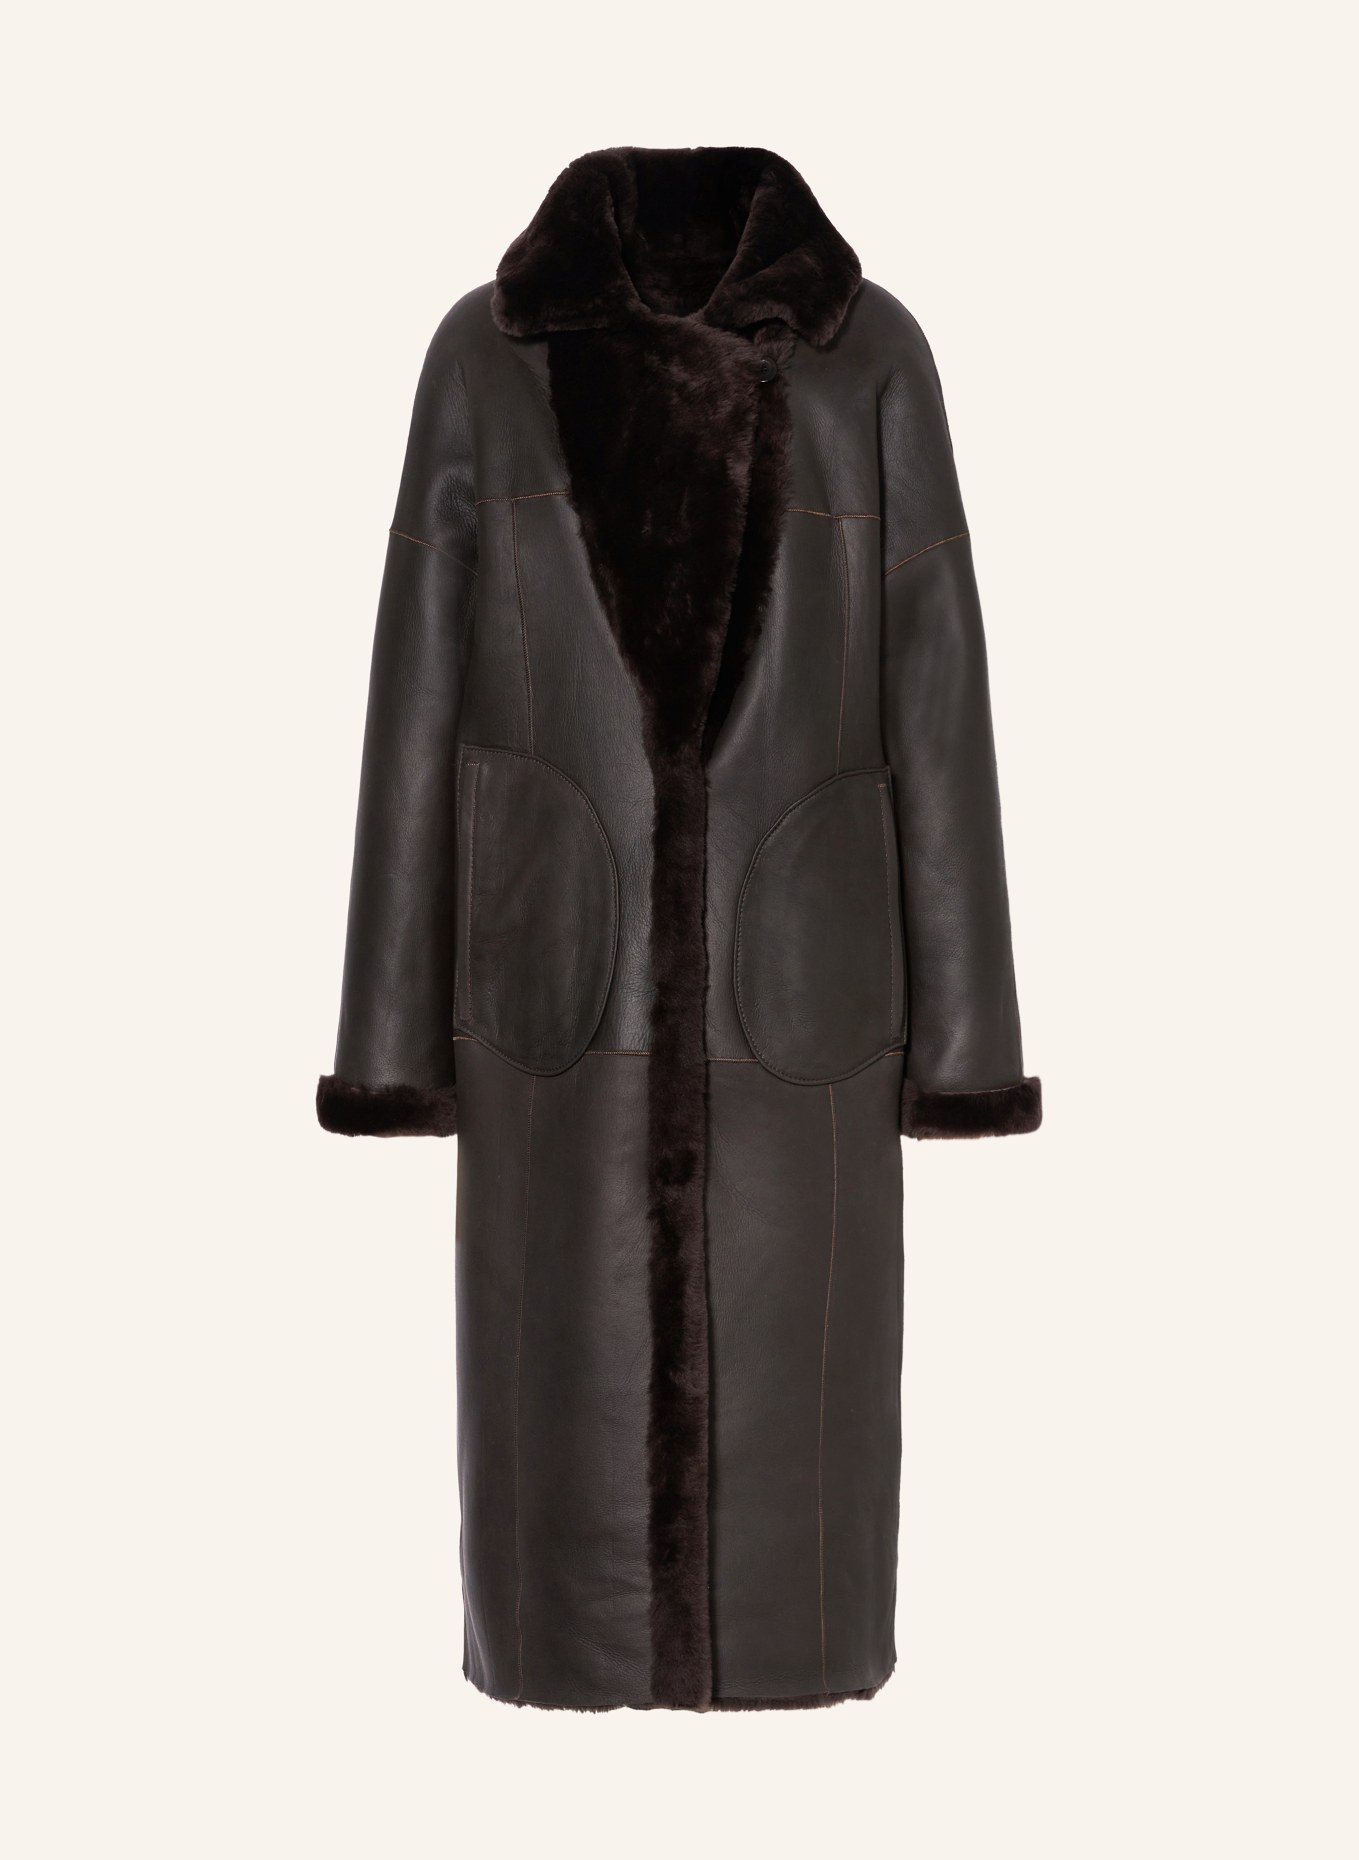 MRS & HUGS Reversible lambskin coat, Color: DARK BROWN (Image 1)